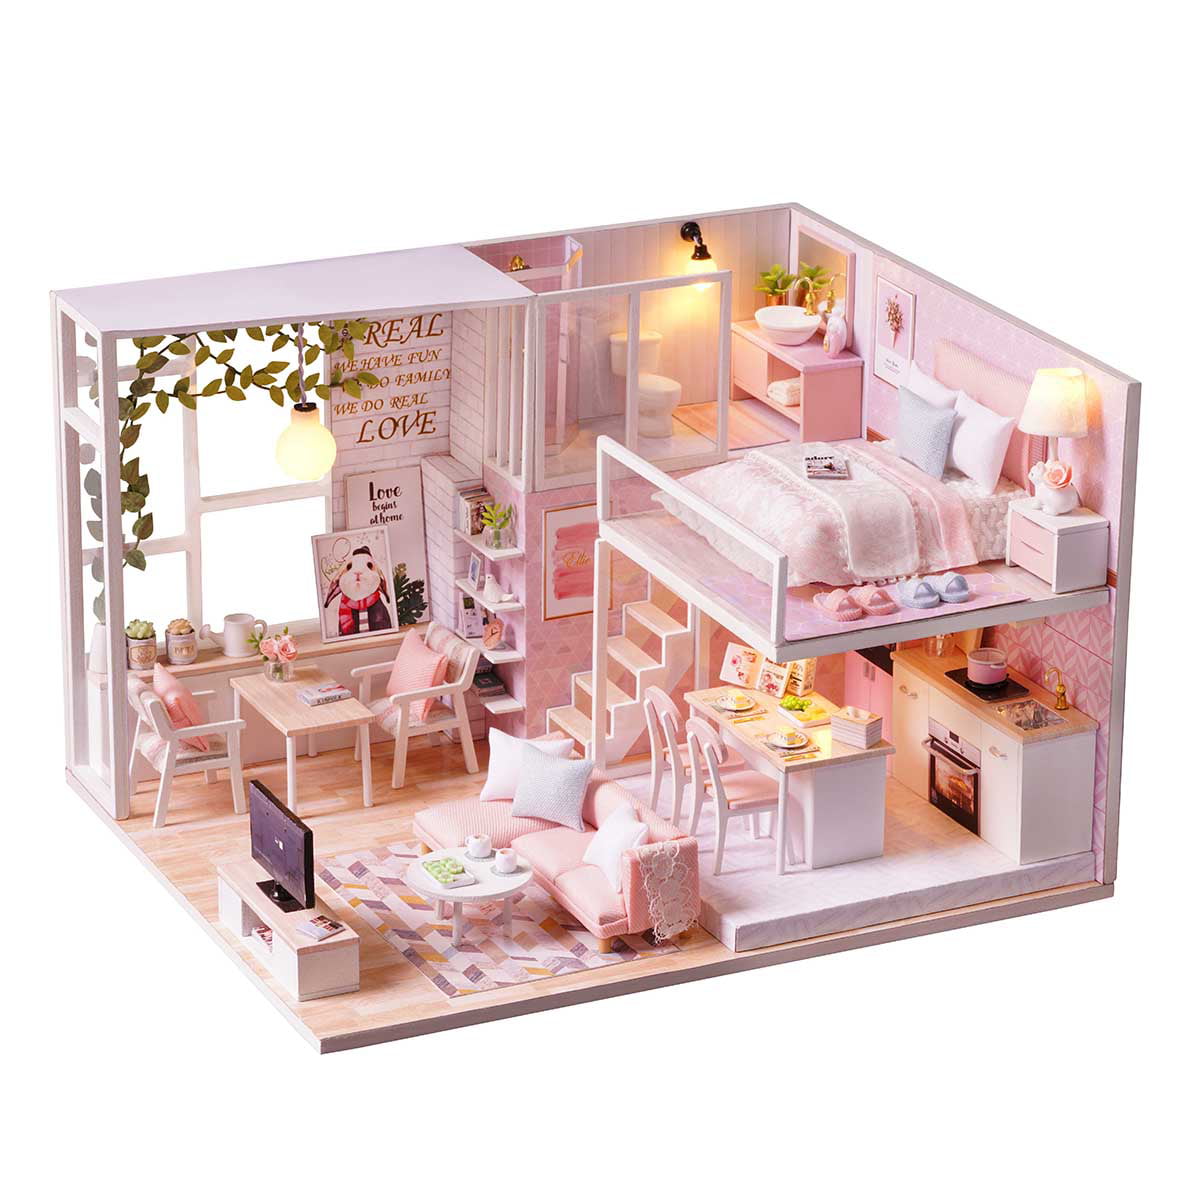 DIY Miniature Landscape Model Bedroom Furniture Dollhouse Wooden LED Kits Gift 